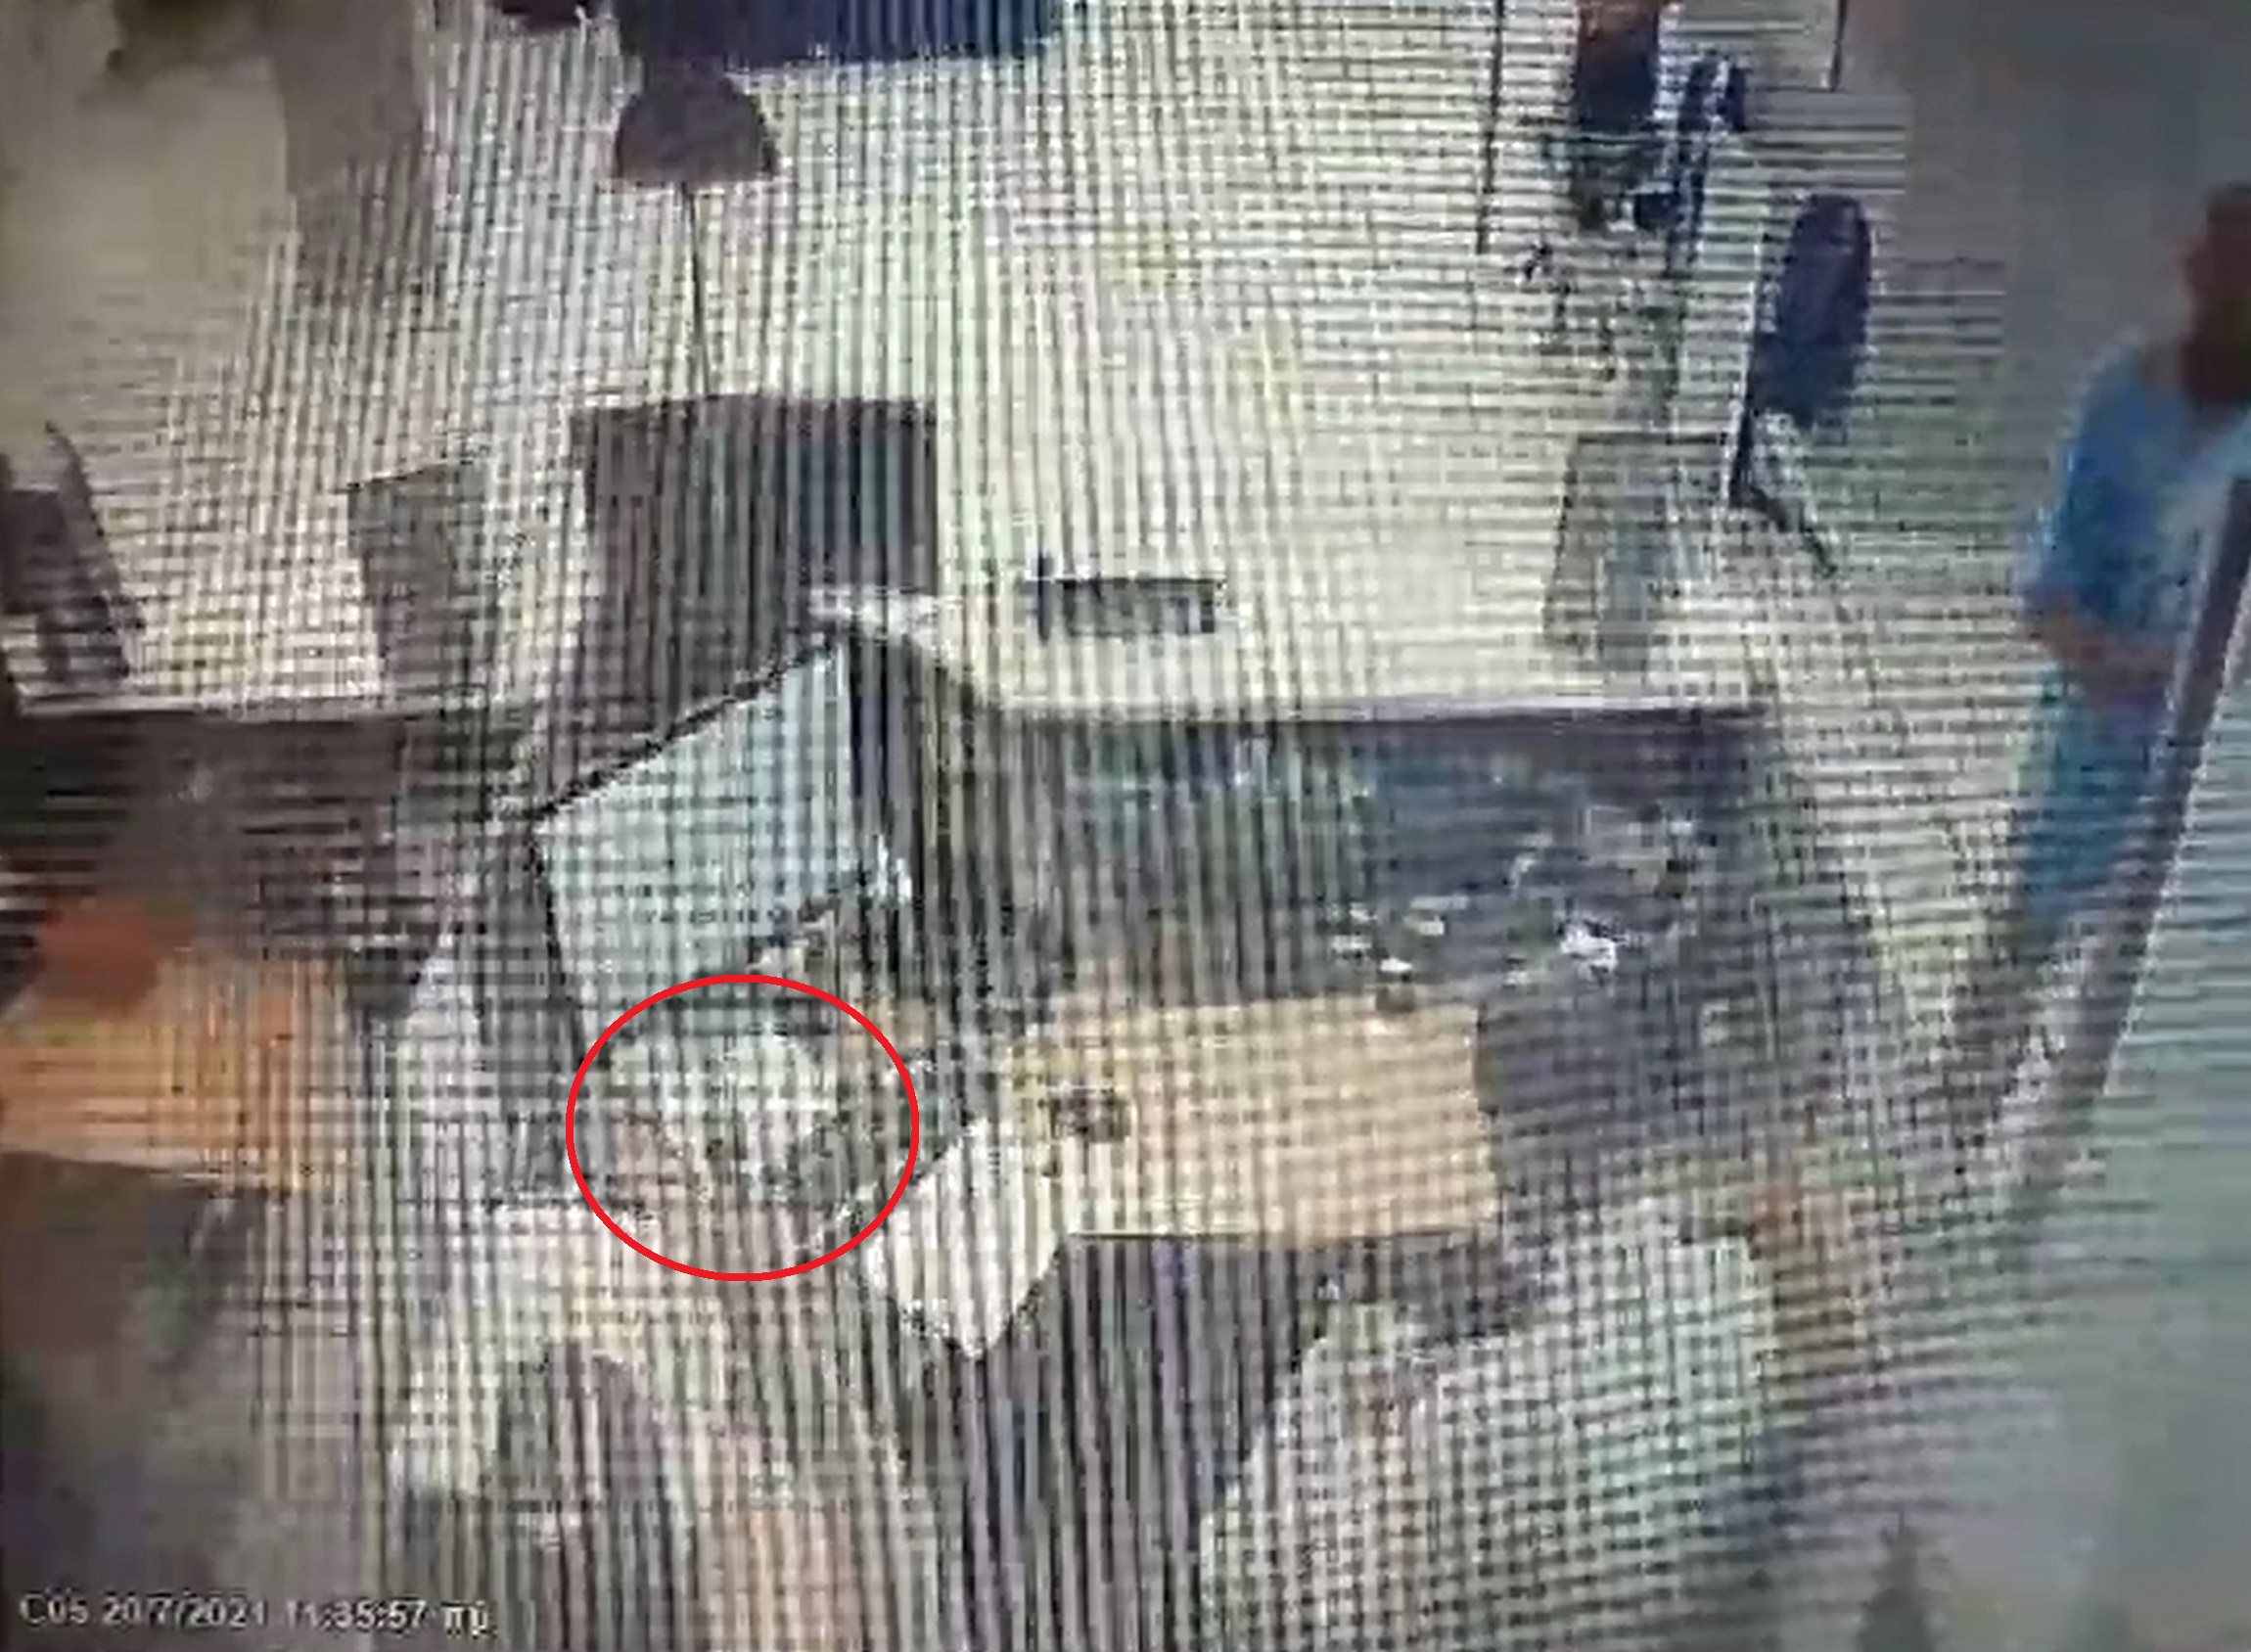 Βίντεο ντοκουμέντο από τη ληστεία σε τράπεζα στο Περιστέρι – Απείλησαν τον ταμία με όπλο